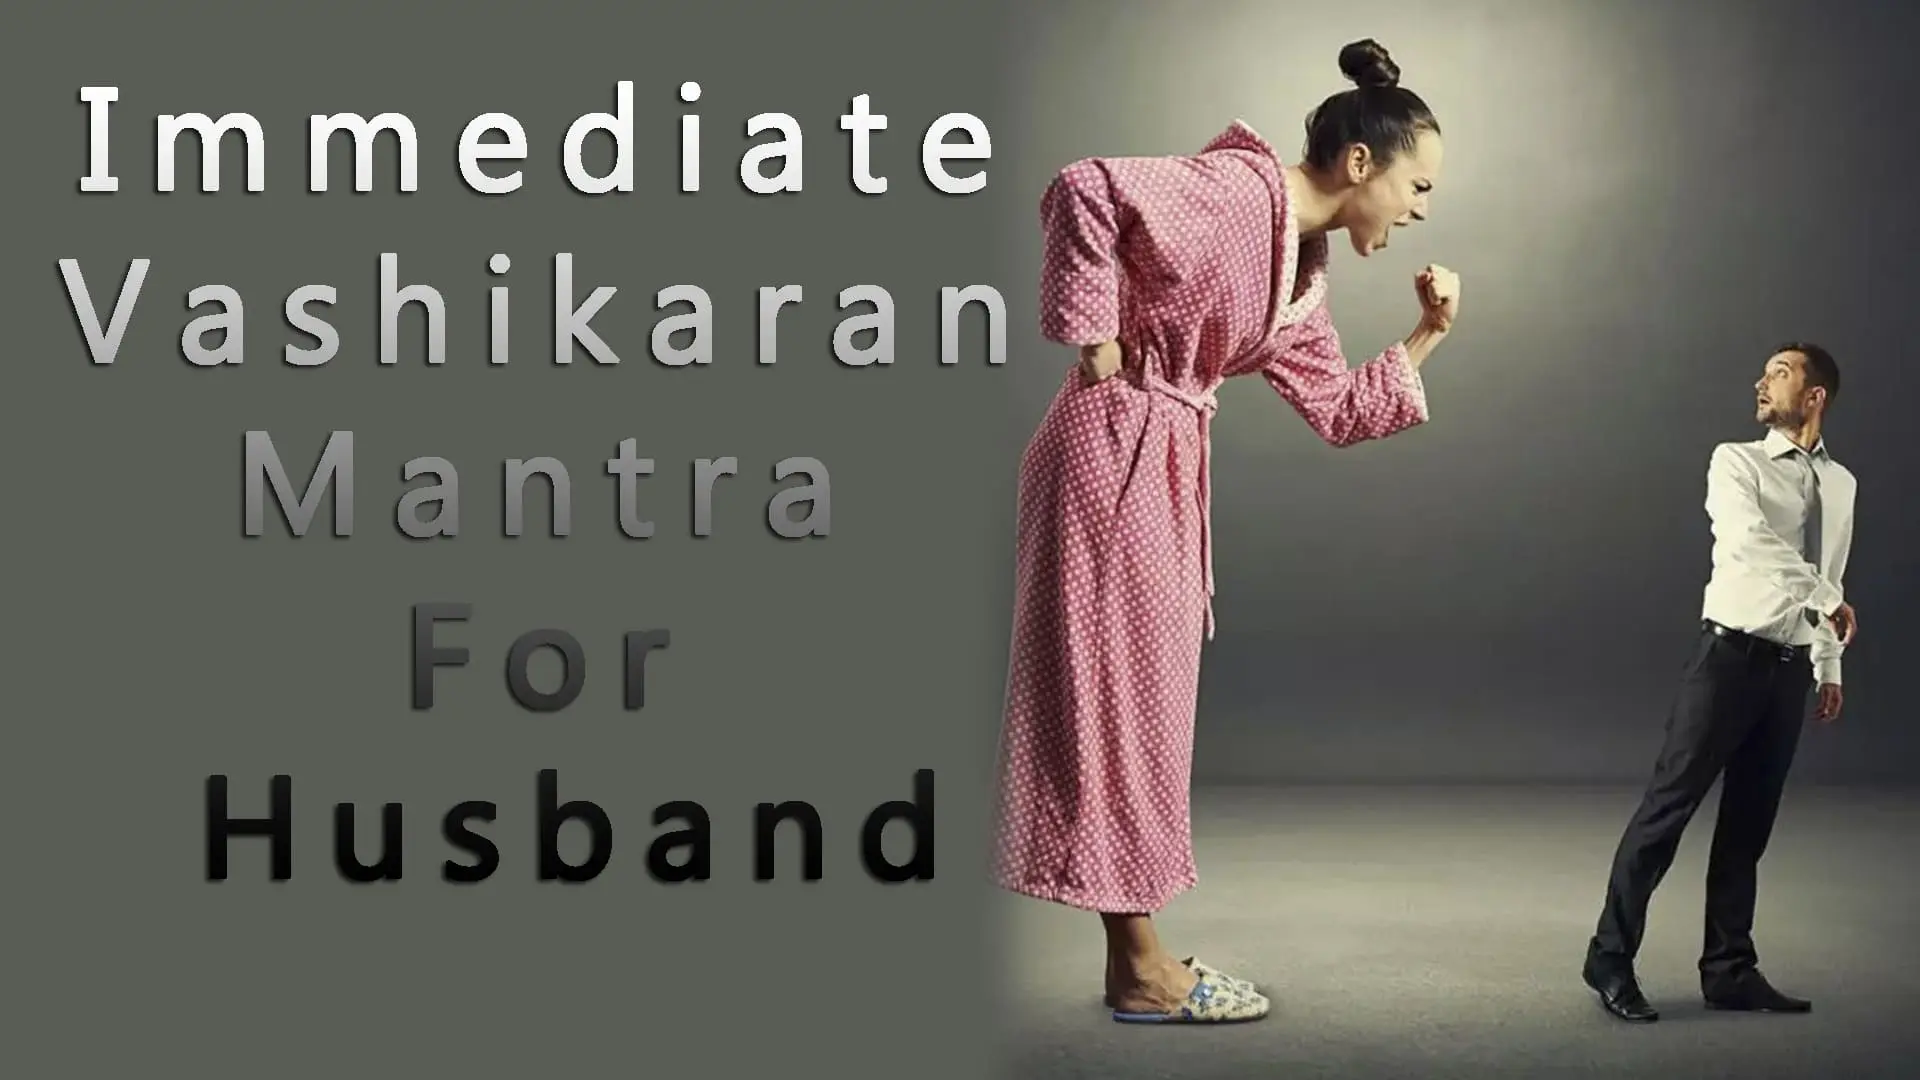 Immediate Vashikaran Mantra For Husband